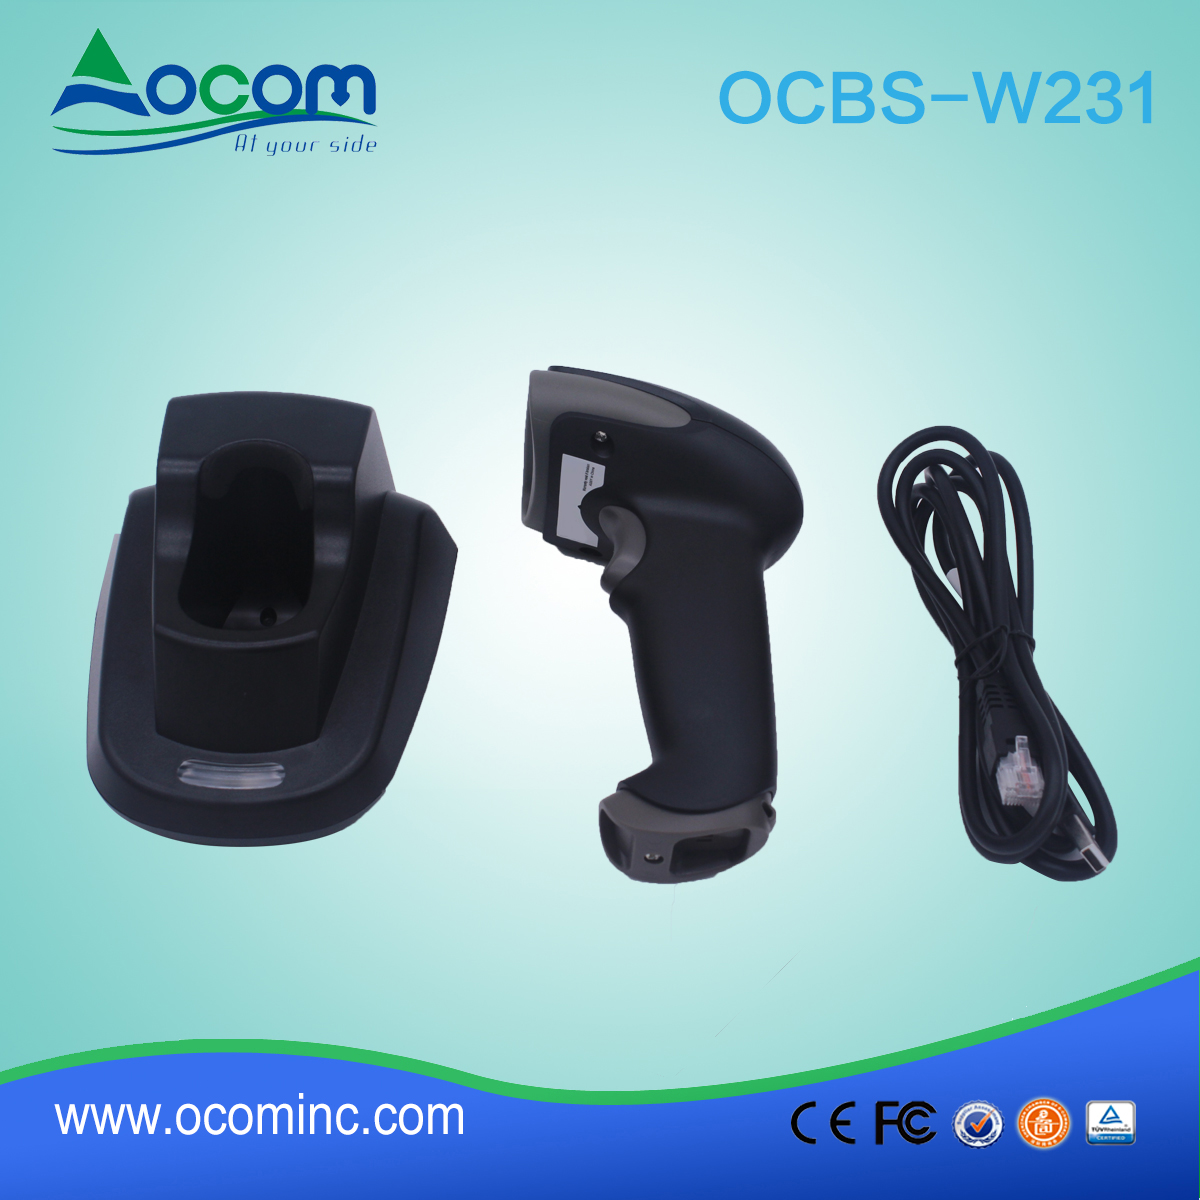 (OCBS-W231) Escáner de código de barras inalámbrico de mano 433 MHz 2D con cuna